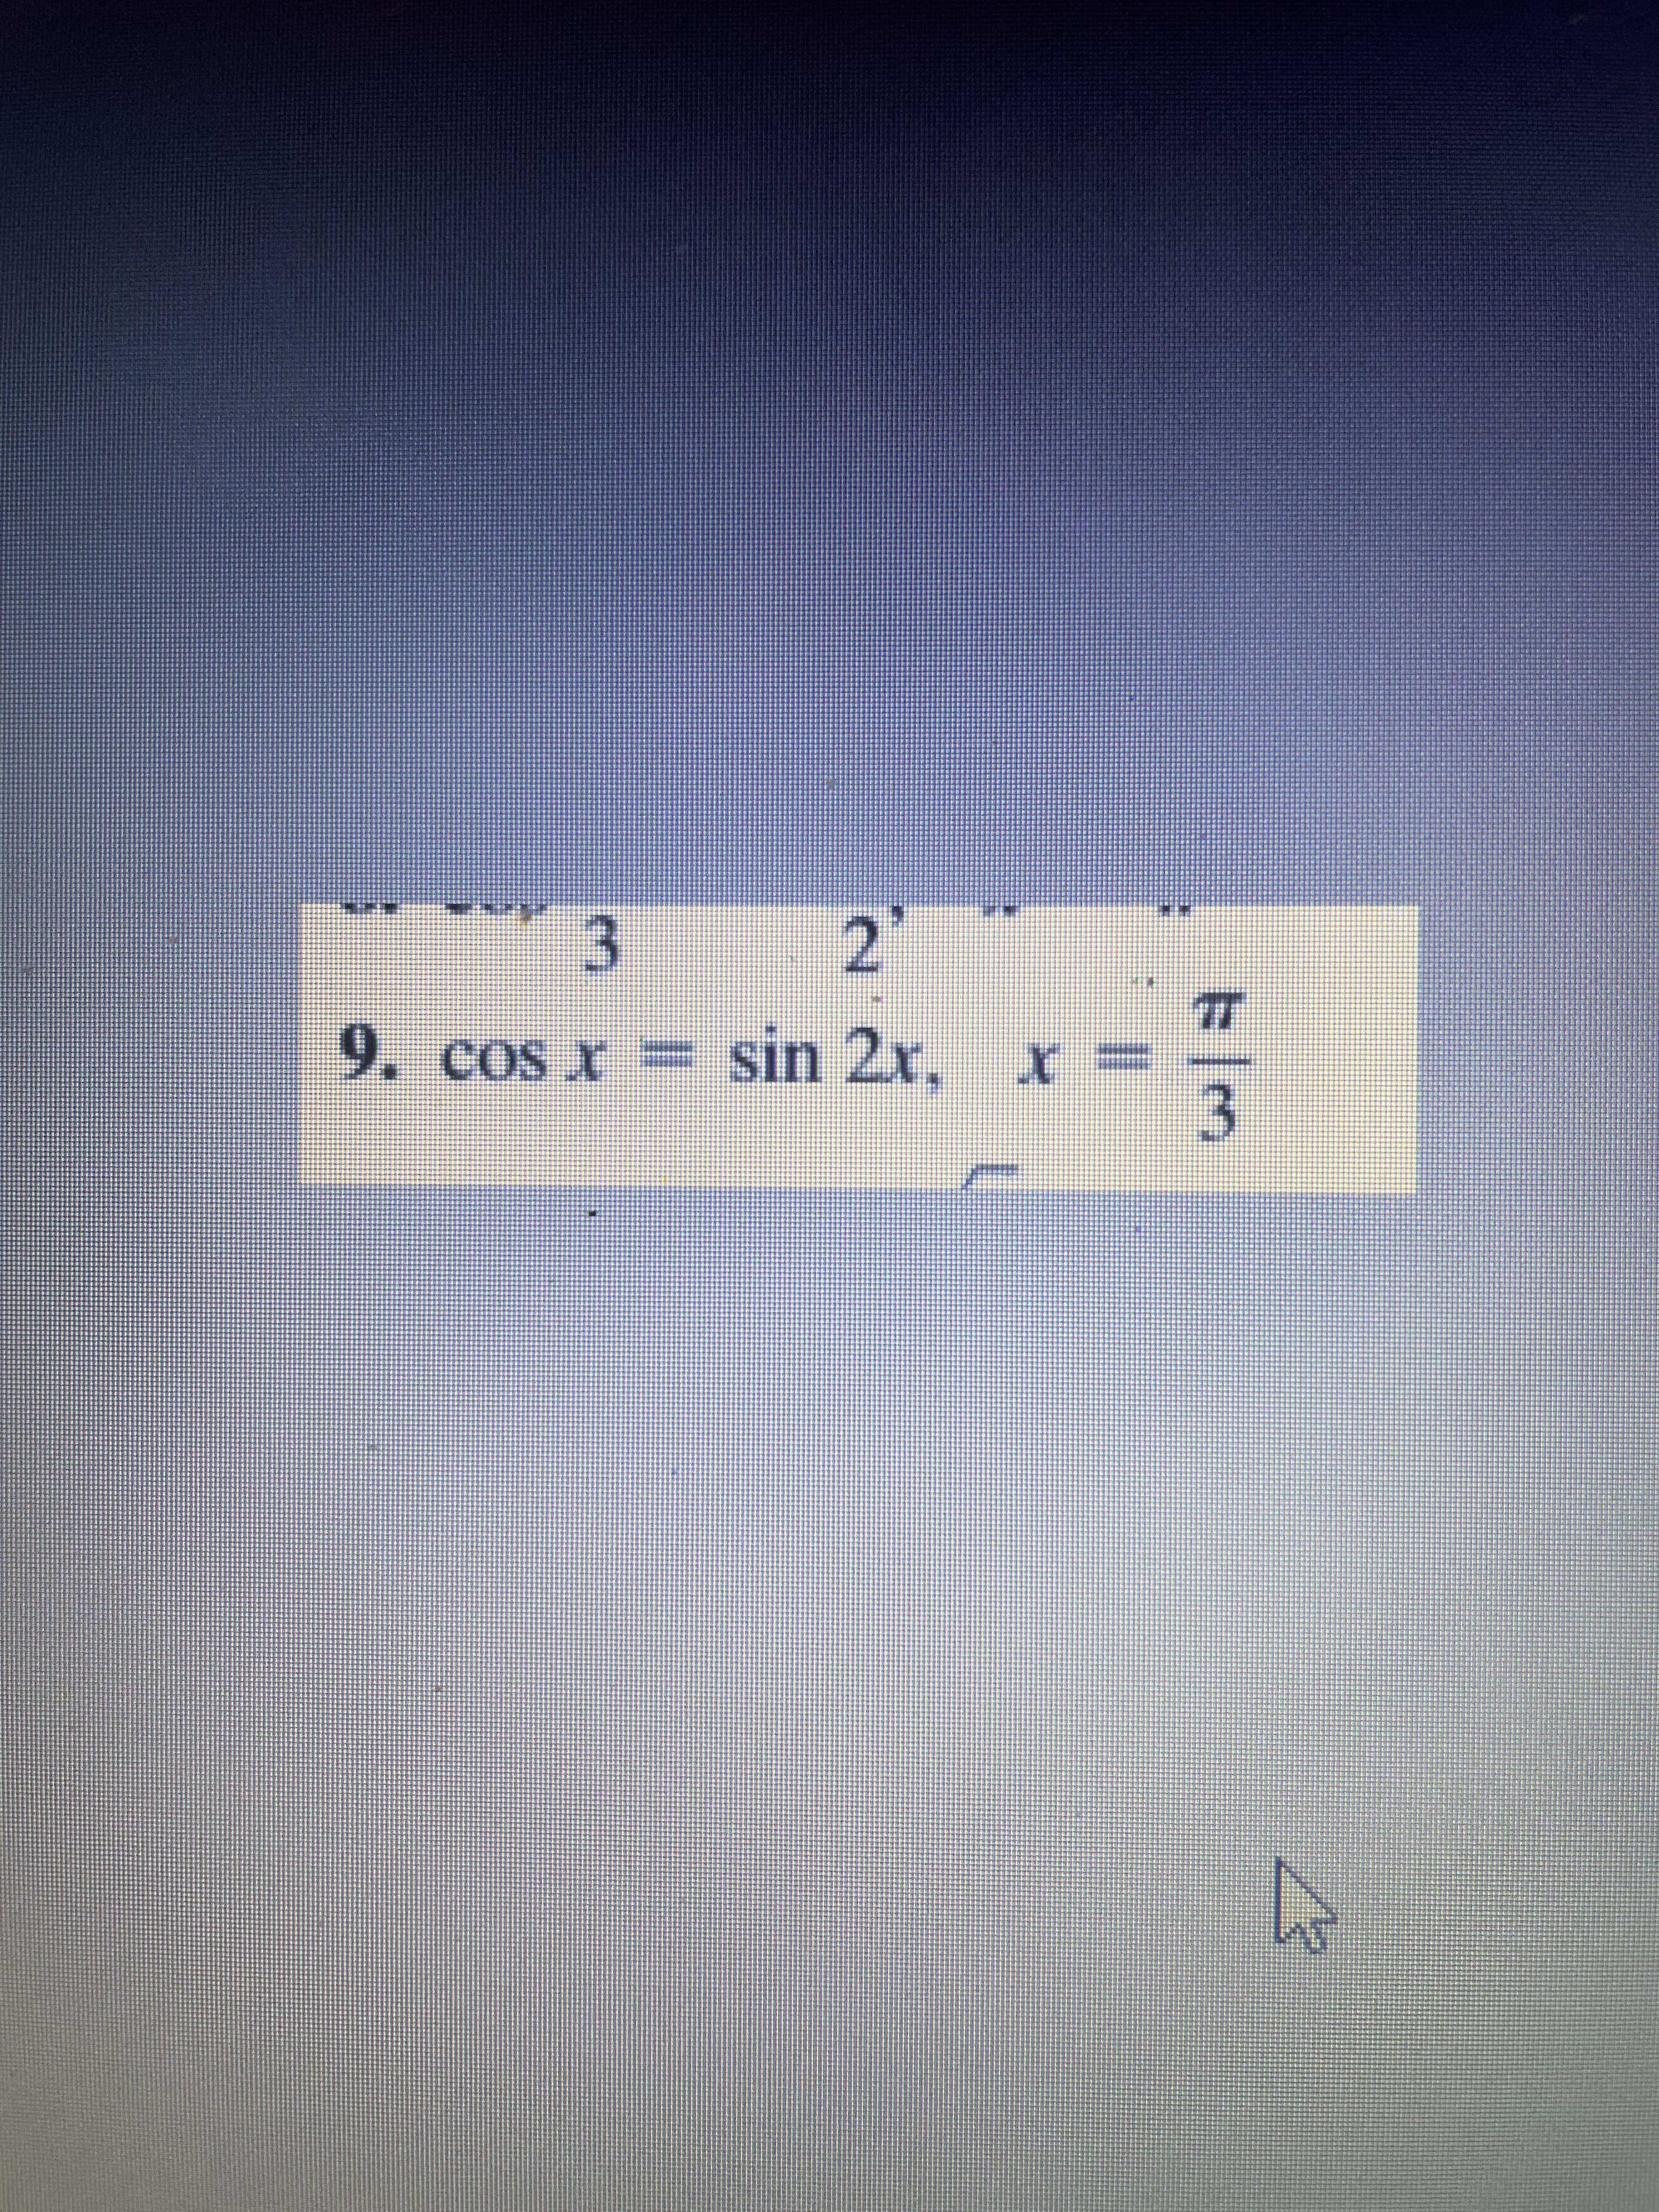 cos x = sin 2x, x
I SO
3.
